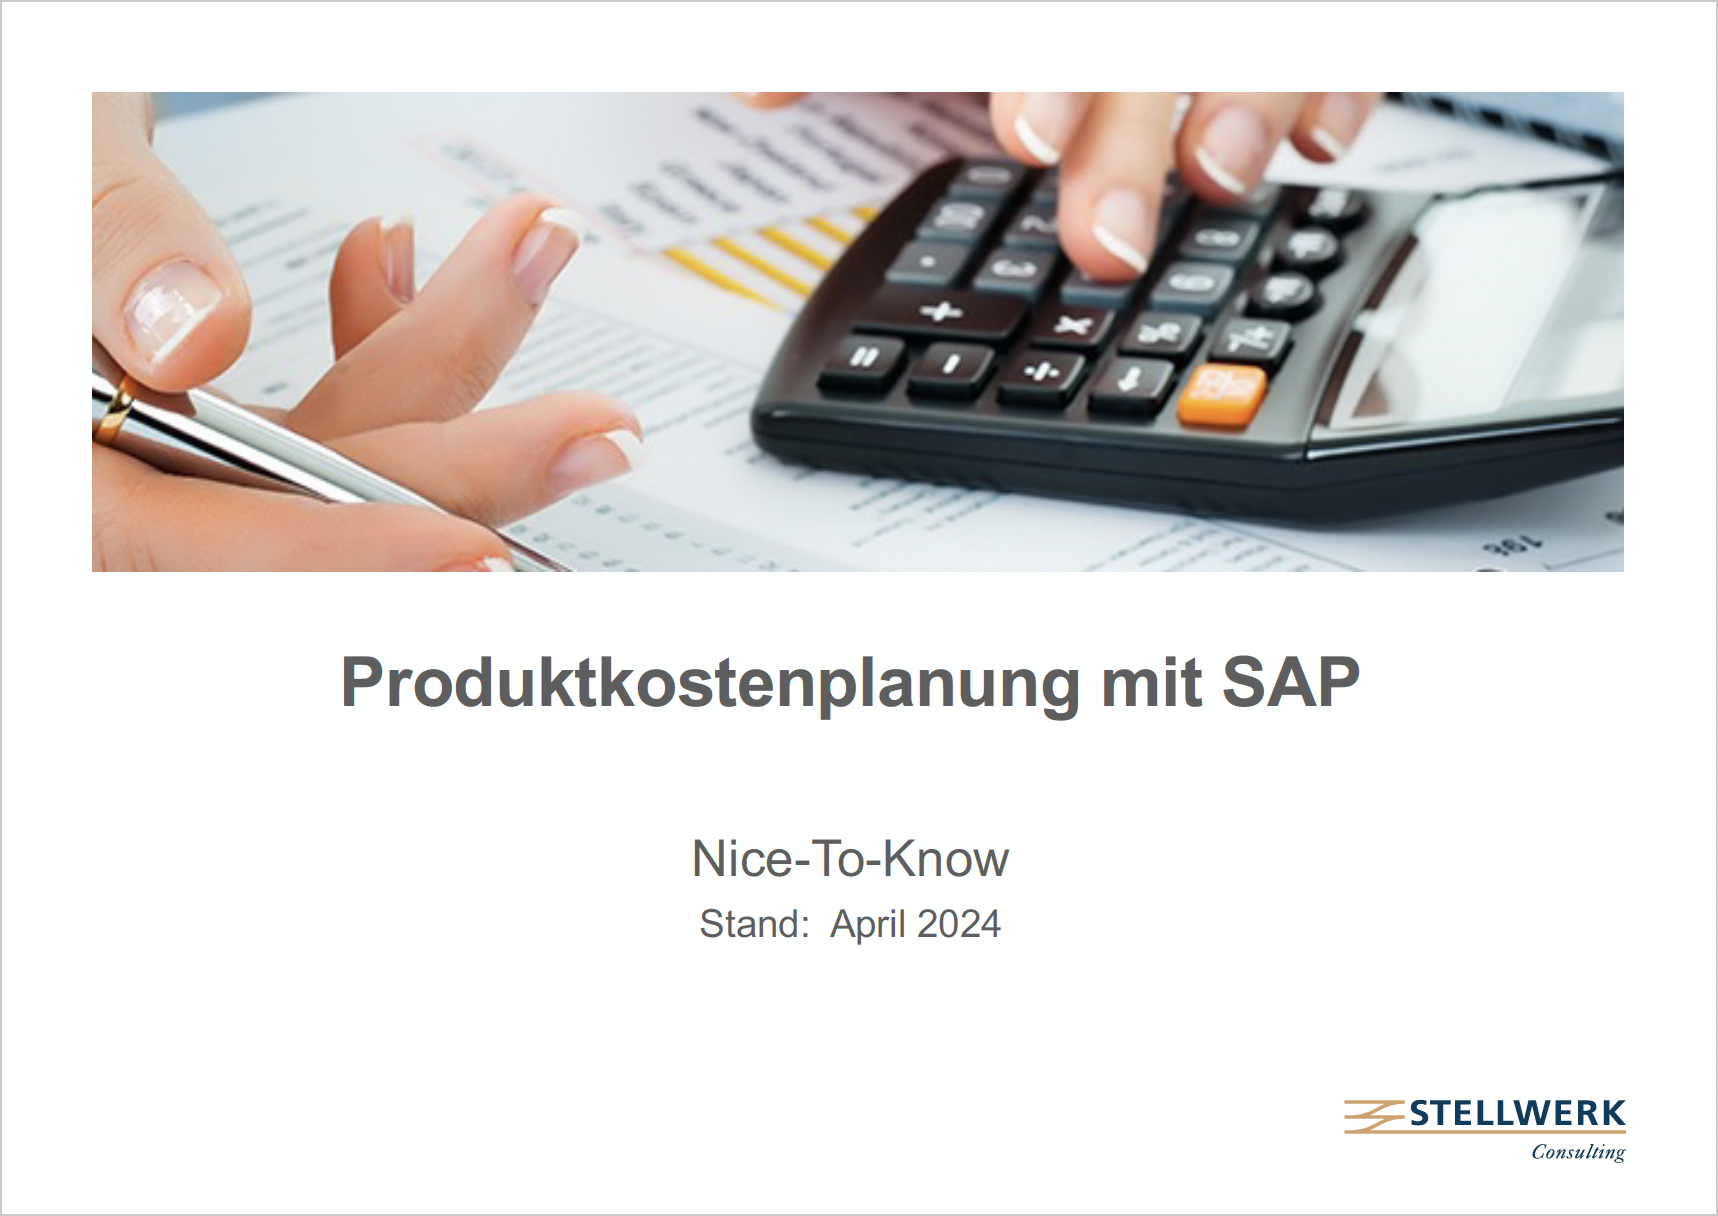 Welche Funktionalitäten die Produktkostenplanung im Bereich SAP Produktkosten-Controlling zu bieten hat und welche tiefergehenden Analysen mit den Fiori-Apps jetzt möglich sind.